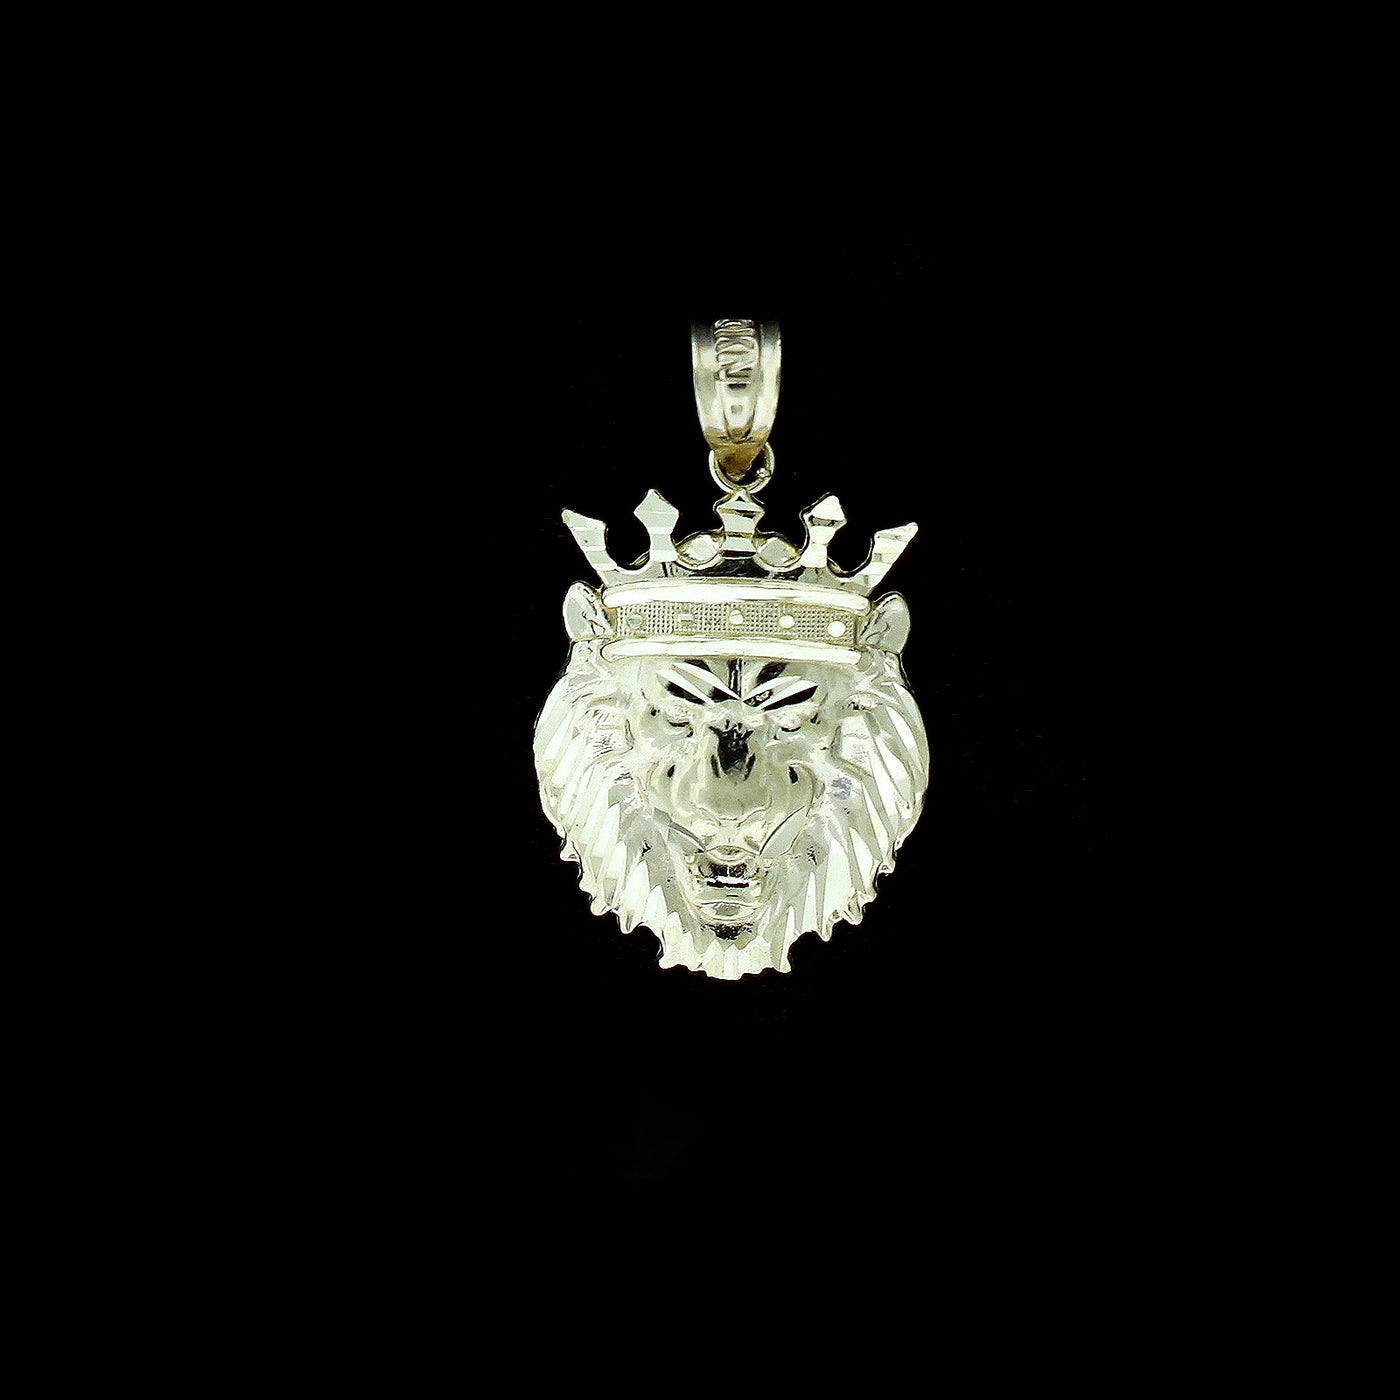 10K Yellow Gold Men's Diamond Cut King Crown Lion Head Charm Pendant